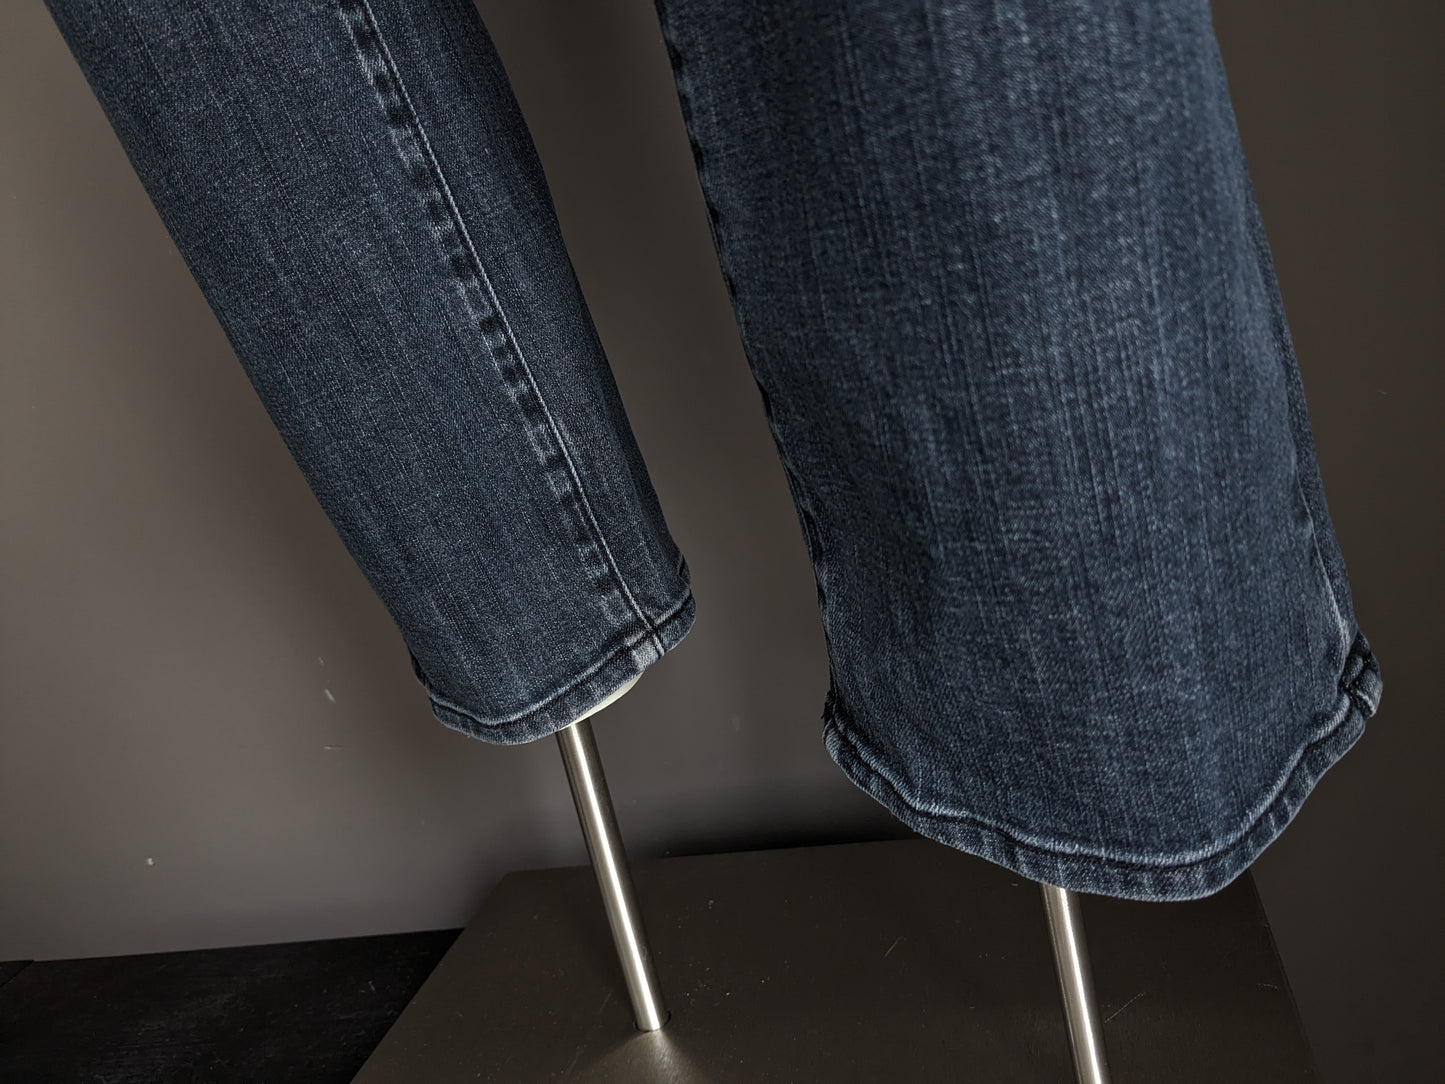 Pierre Cardin jeans. Zwart Grijs gekleurd. Maat W33 - L30. type Mod Deauville.